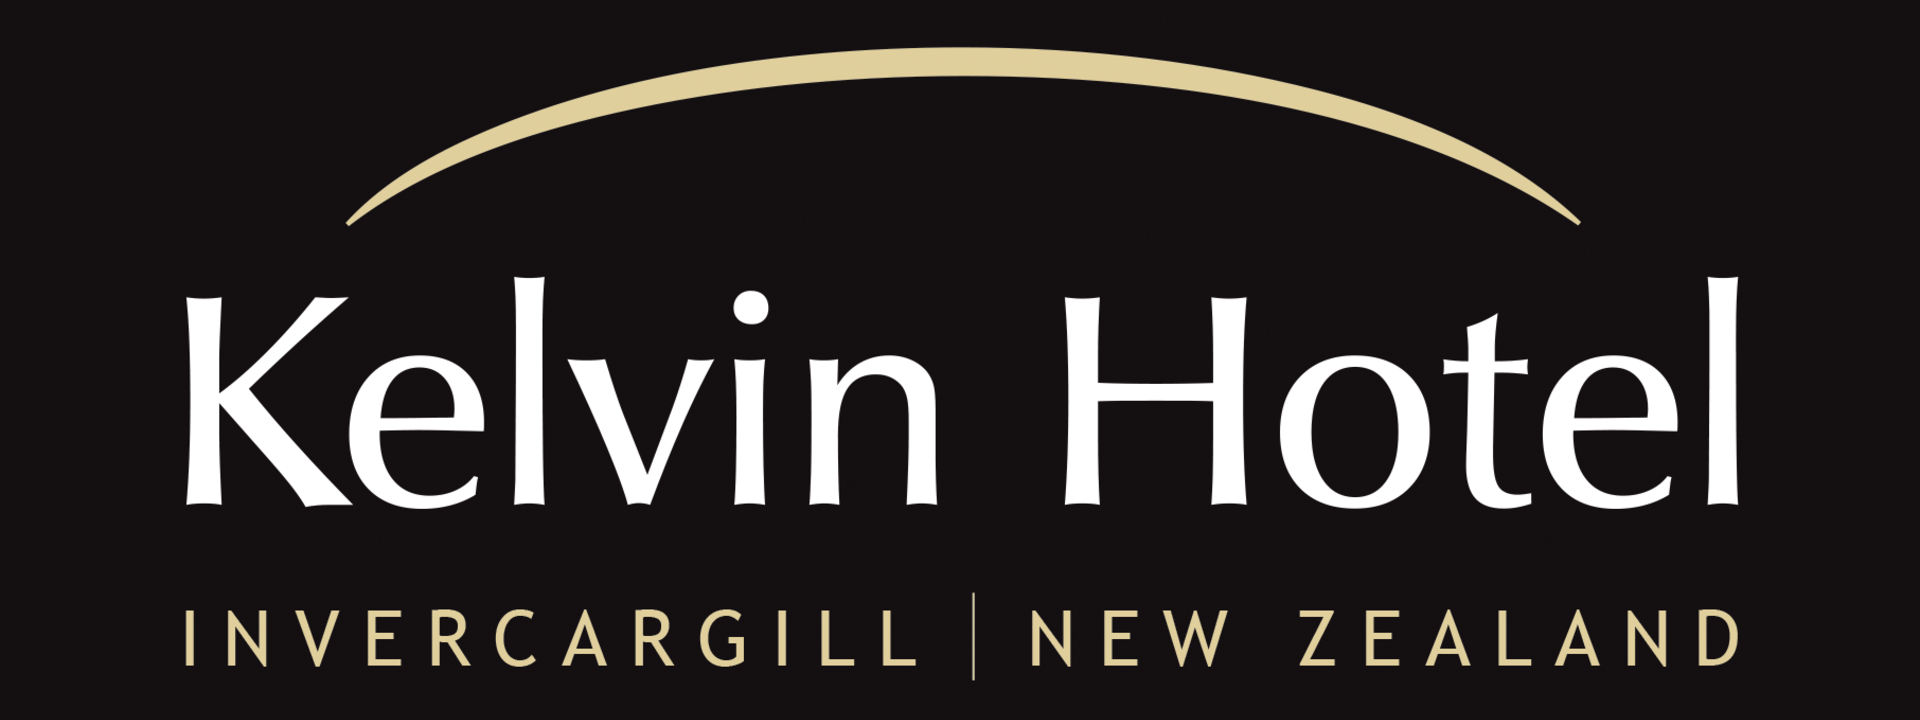 kelvin-hotel-logo_cmyk-_invercargill.png